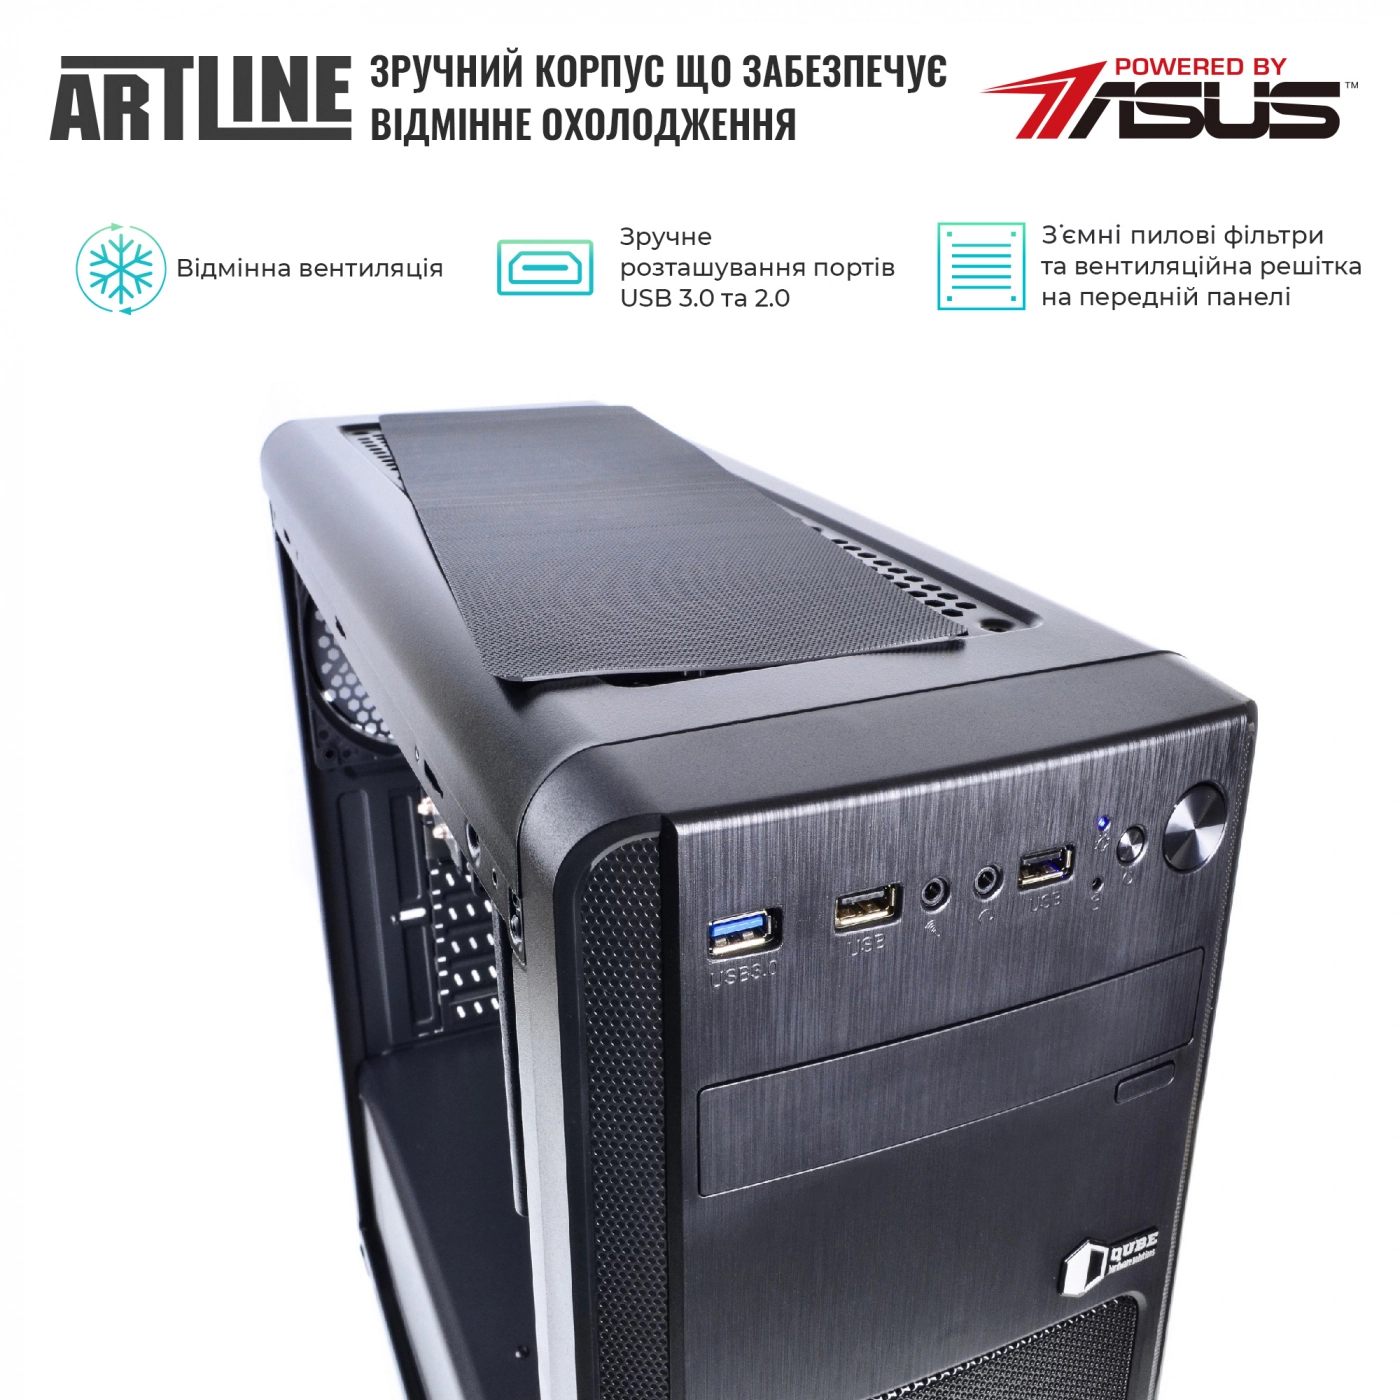 Купить Сервер ARTLINE Business T27v18 - фото 2